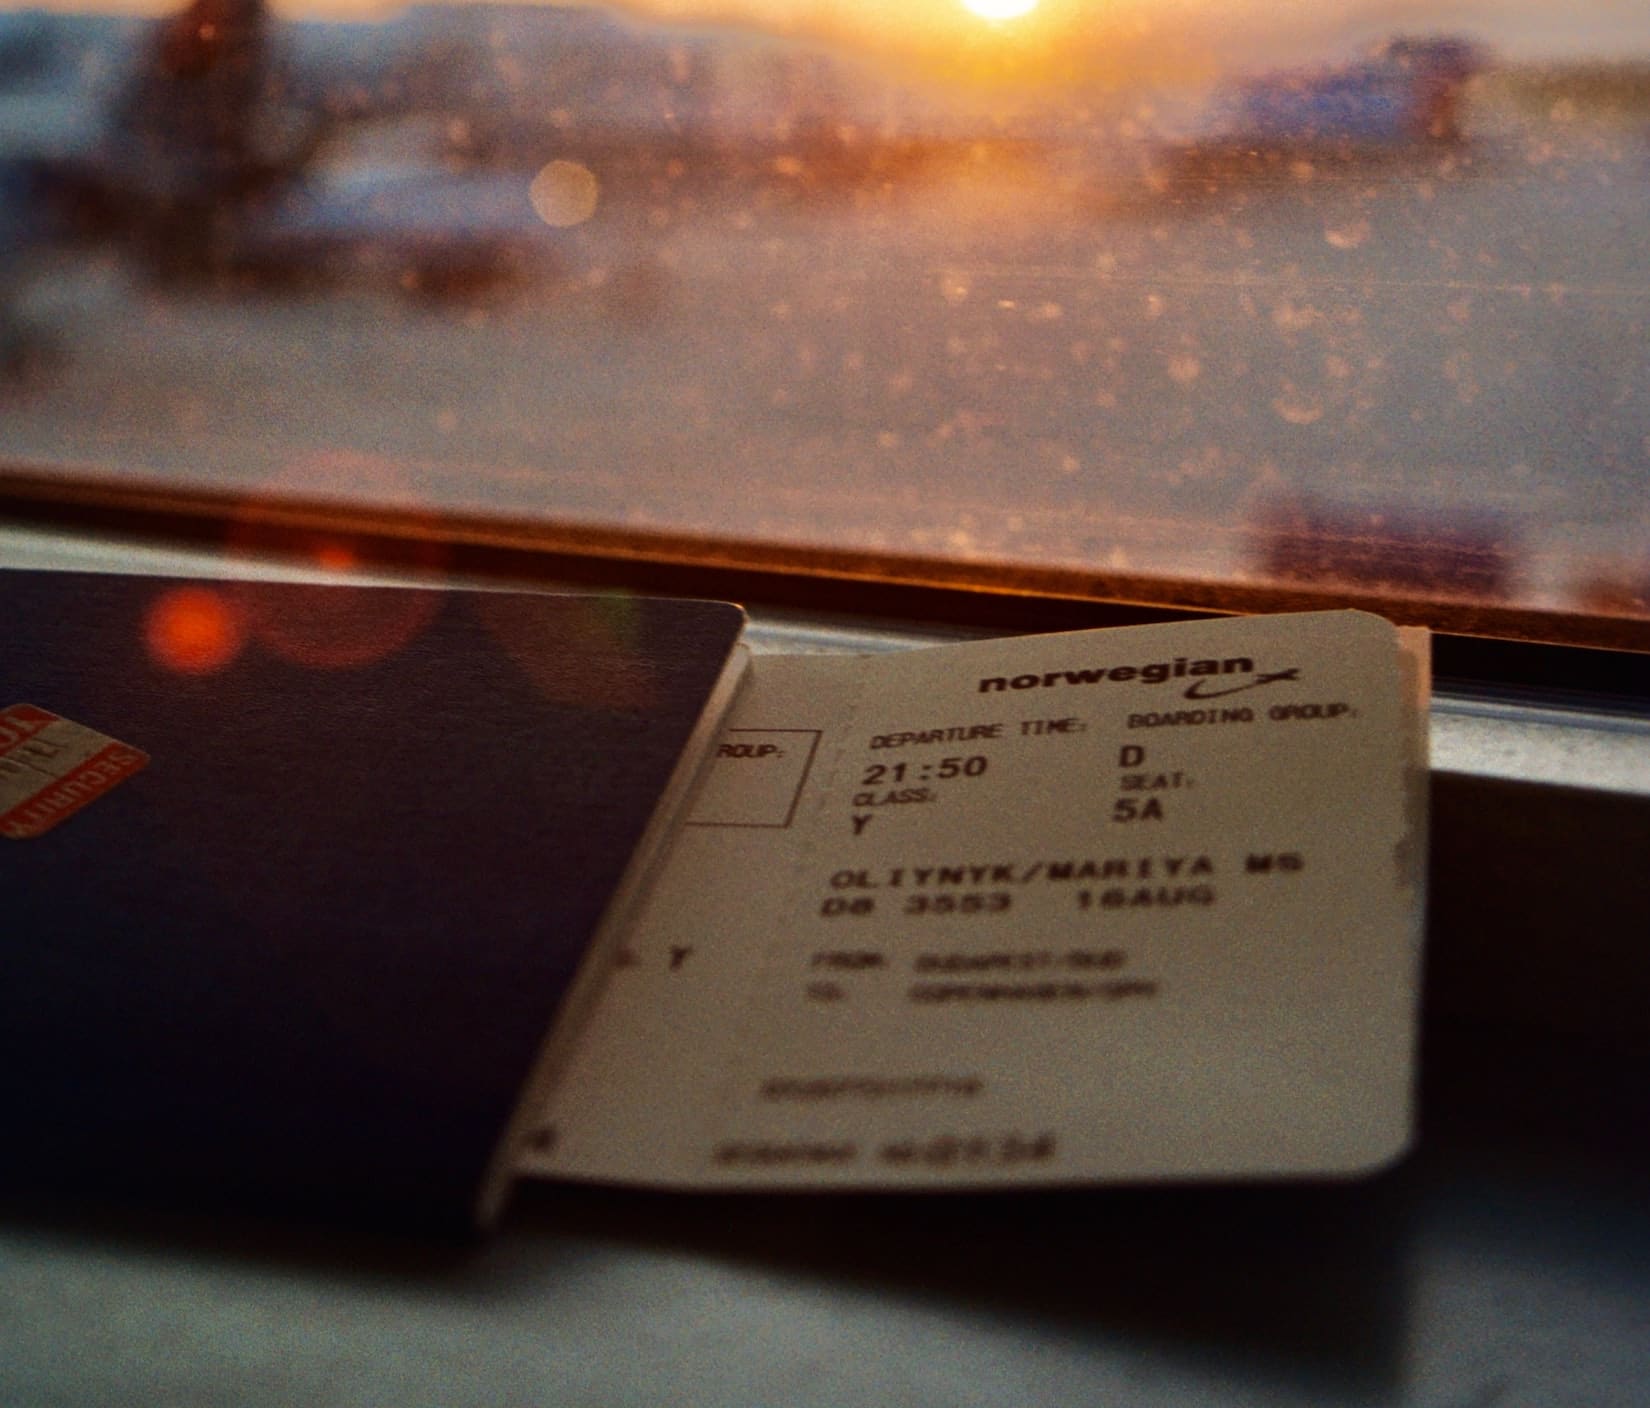 Pass og flybillett i vinduskarm på flyplass